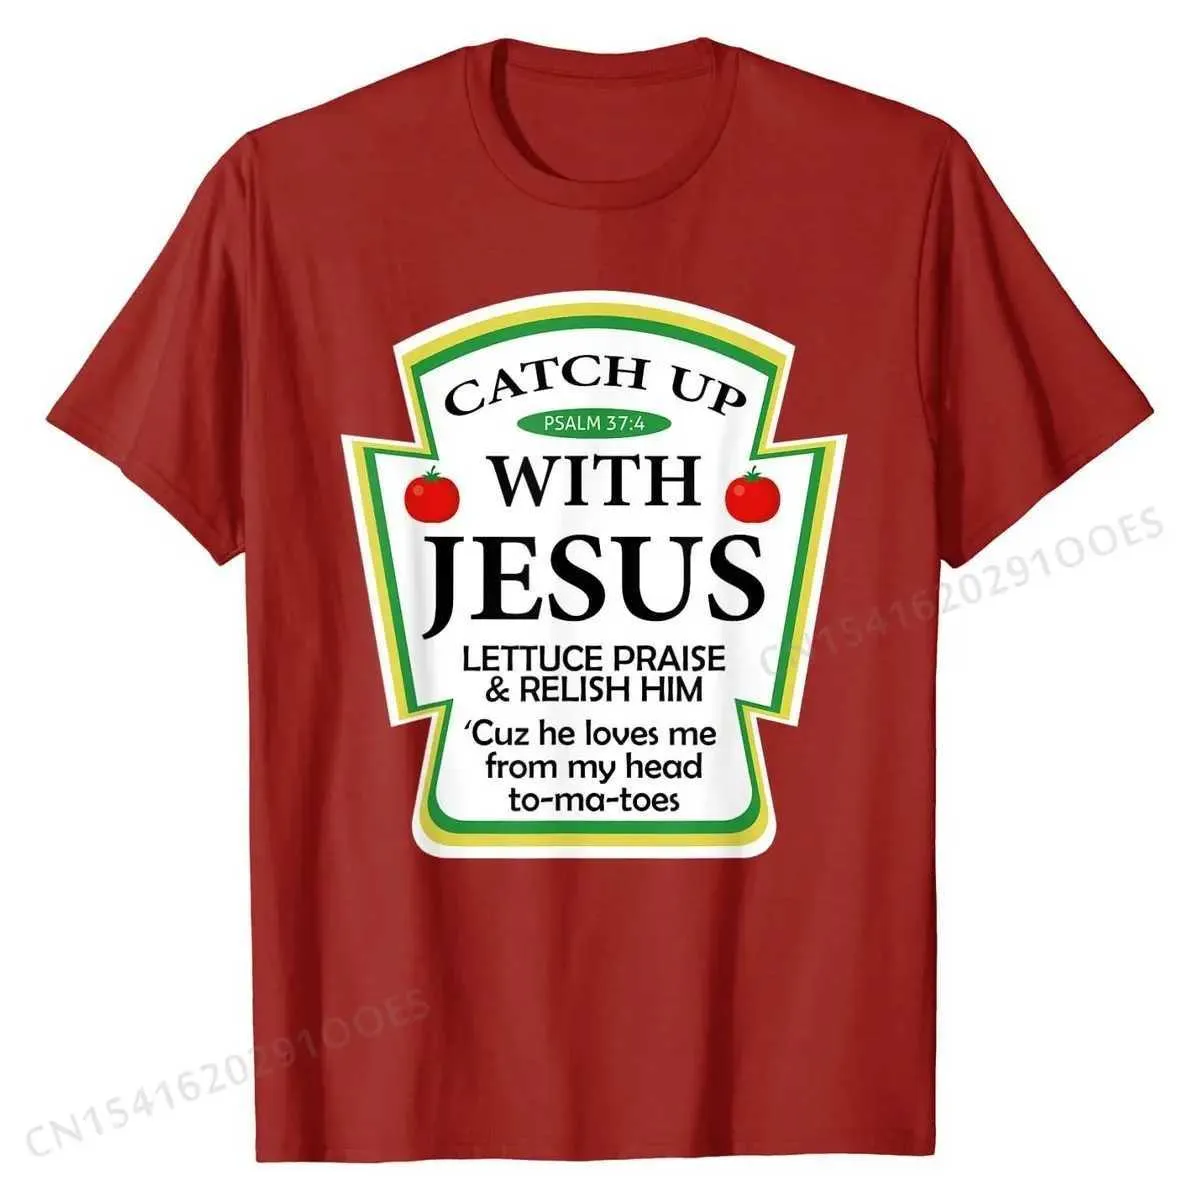 T-shirty męskie łapanie z Jezusem koszulką zabawną chrześcijańską koszulkę prezentu urocze osobiste top T-shirty bawełniane mężczyźni topy koszulki personzed t240425